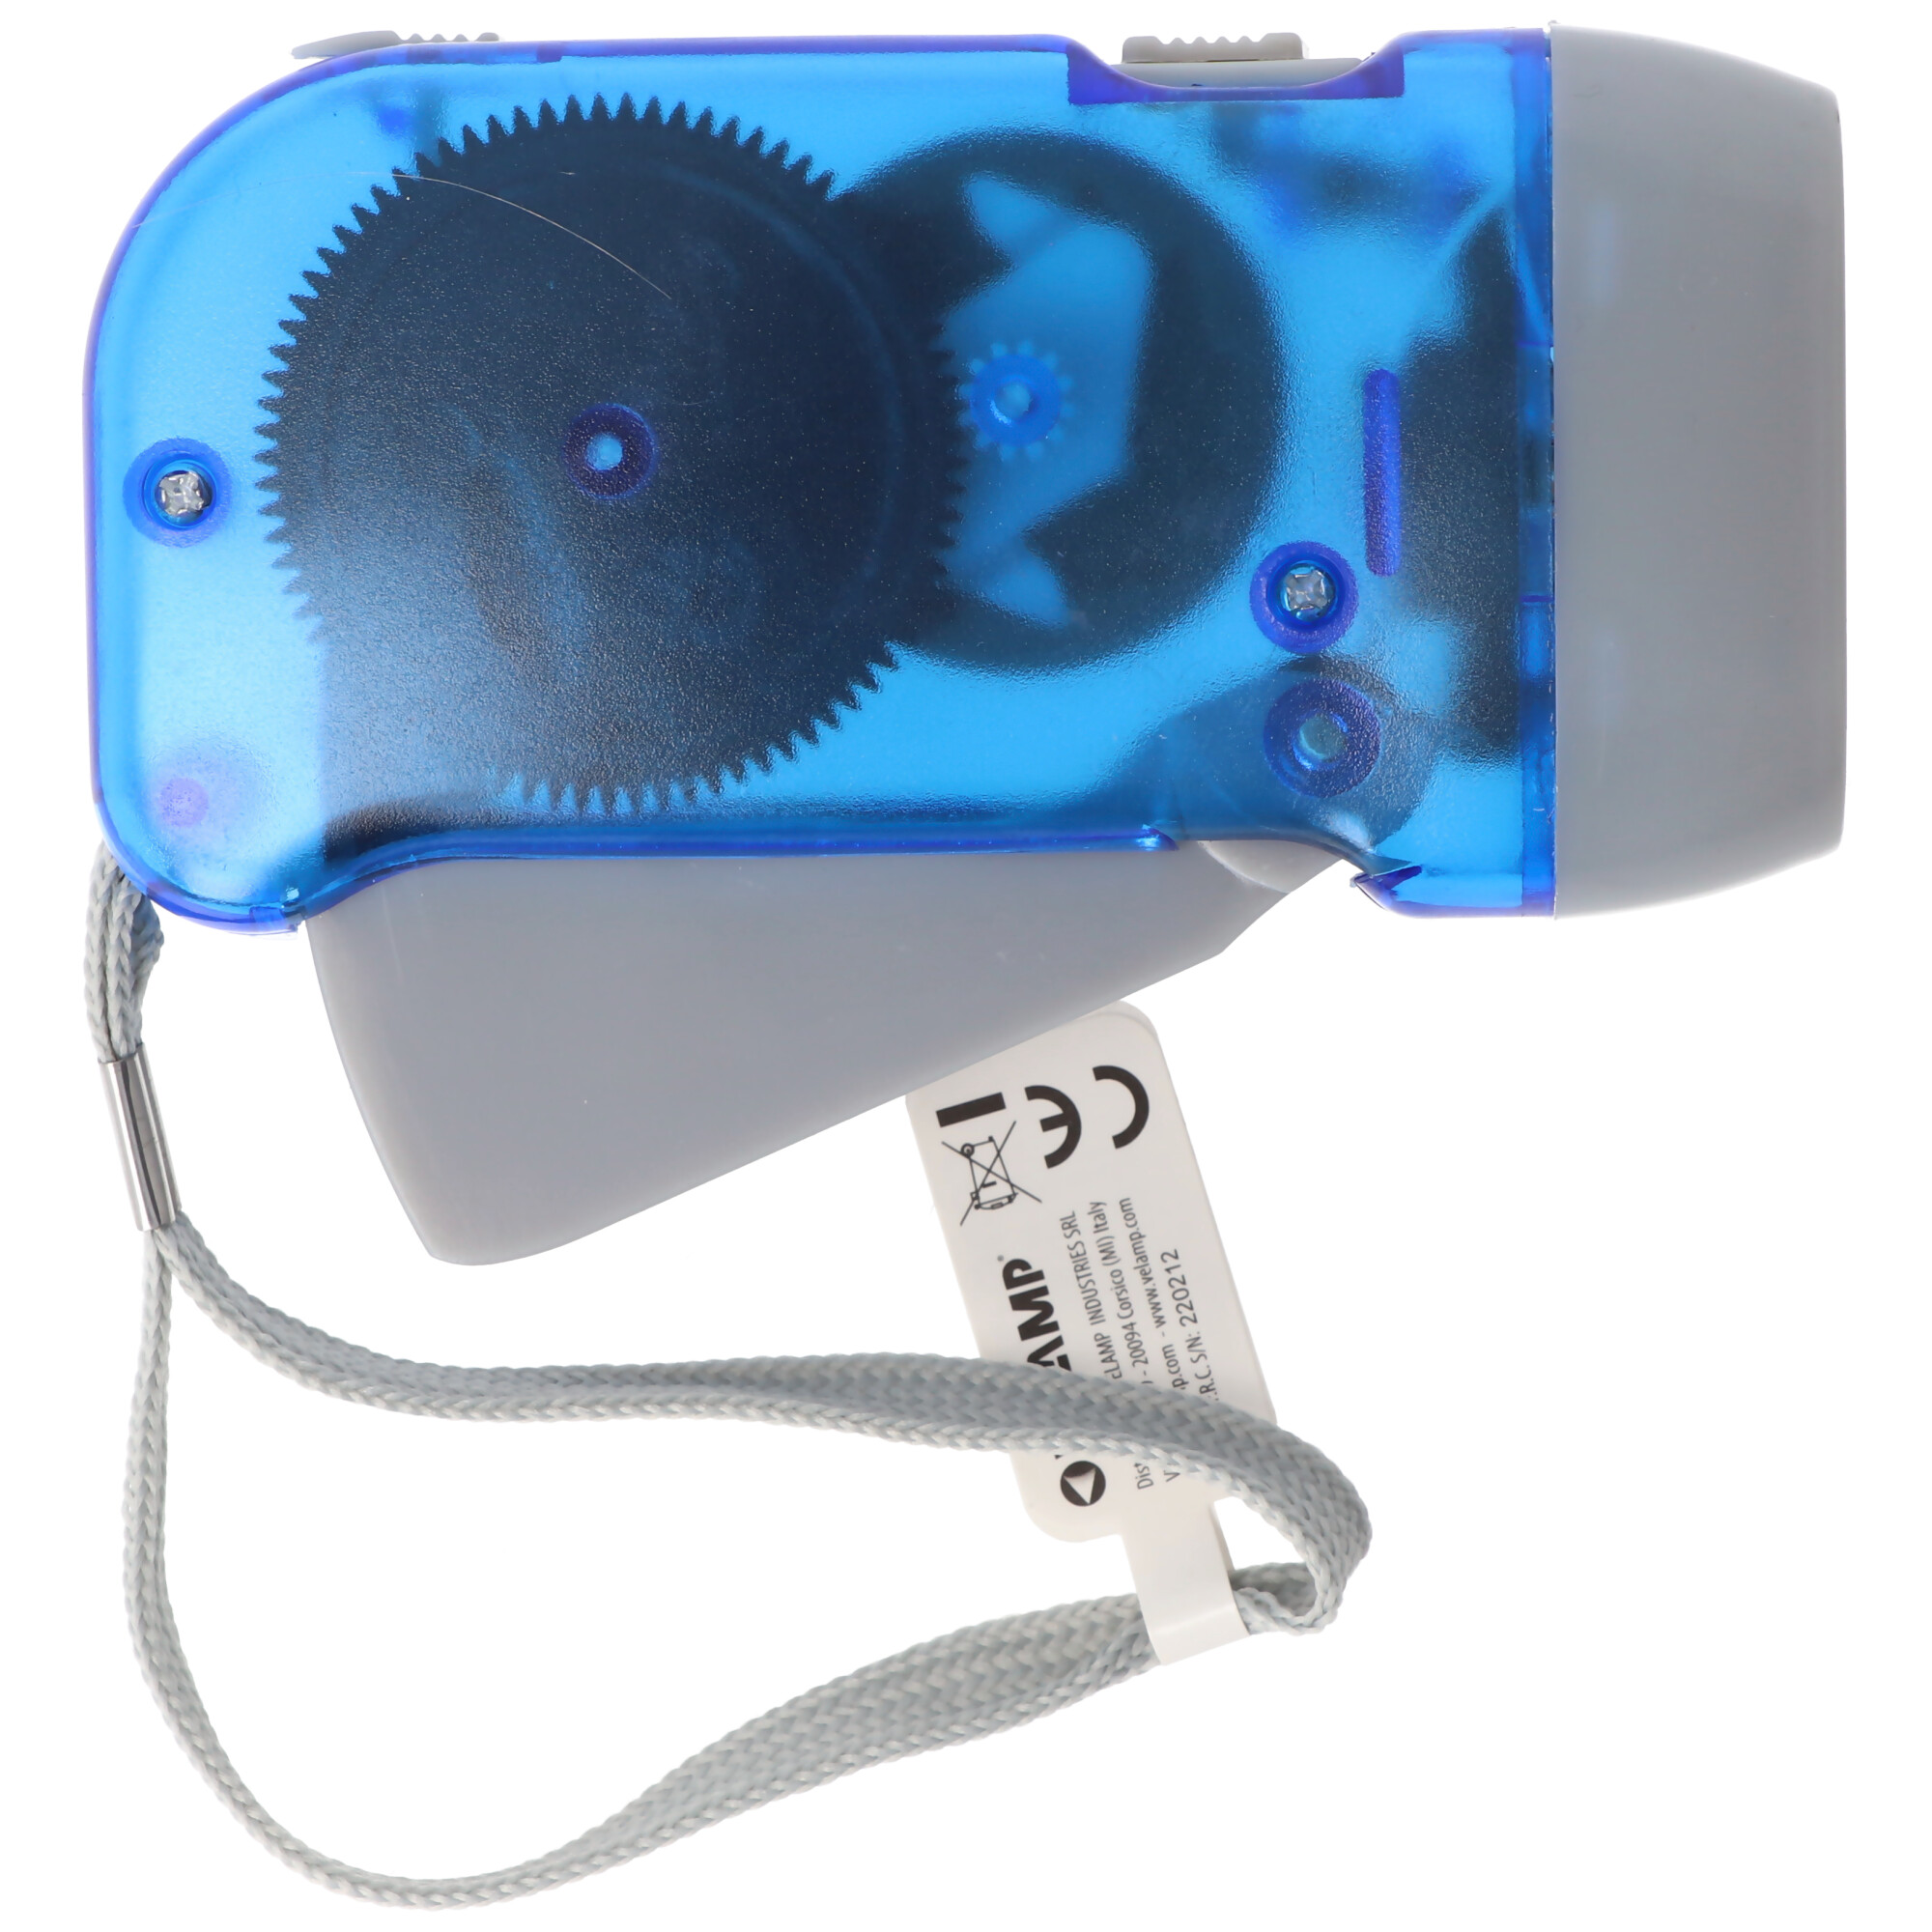 3fach LED Dynamo Taschenlampe wiederaufladbar, Blau und Gelb, mit Anti Black Out Funktion